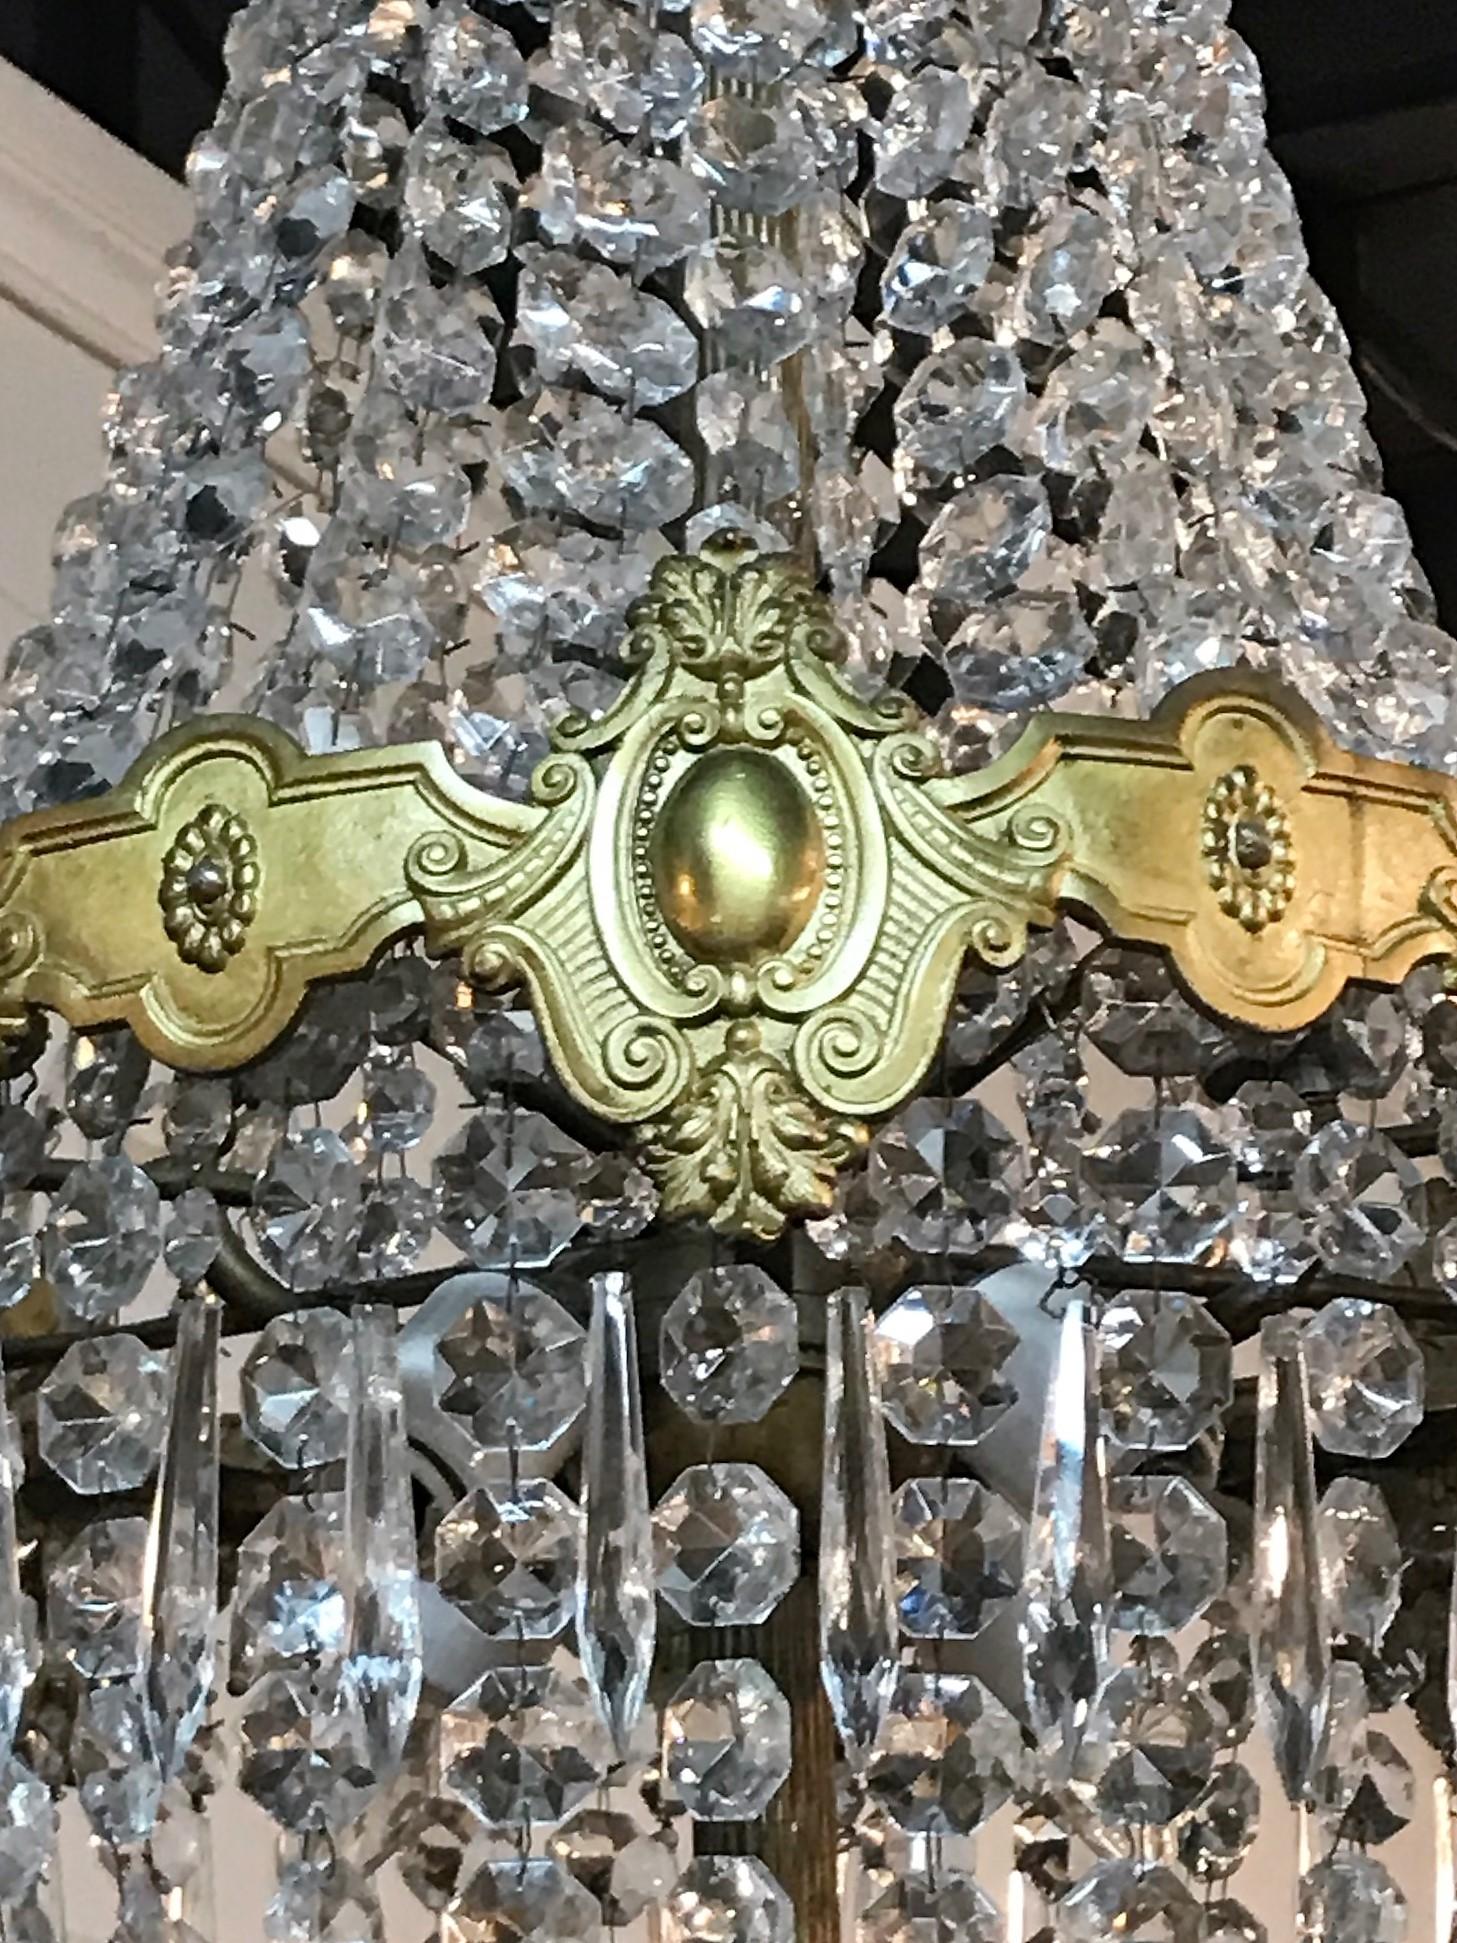 Kronleuchter in Korbform aus Kristall (Französisch)